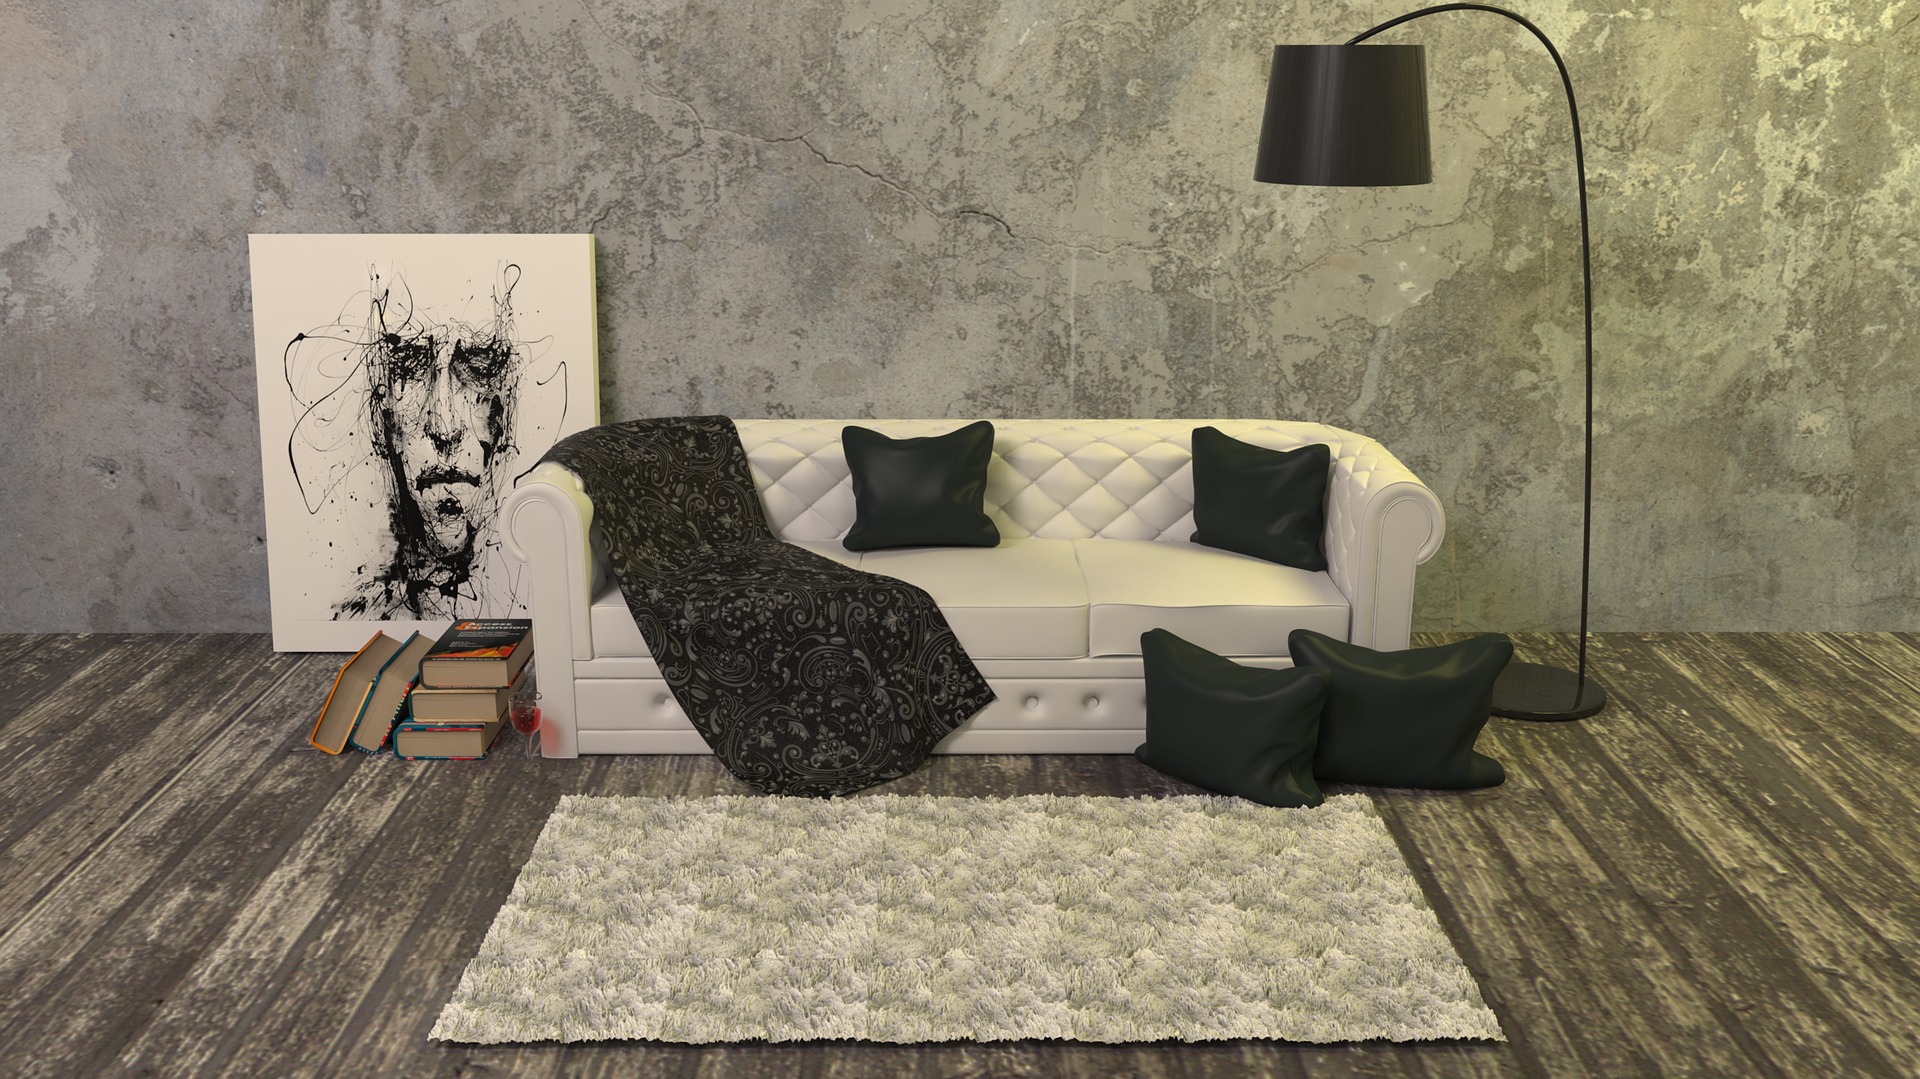 Ilustrasi Sofa, Lampu, Lukisan, Buku, dan Karpet